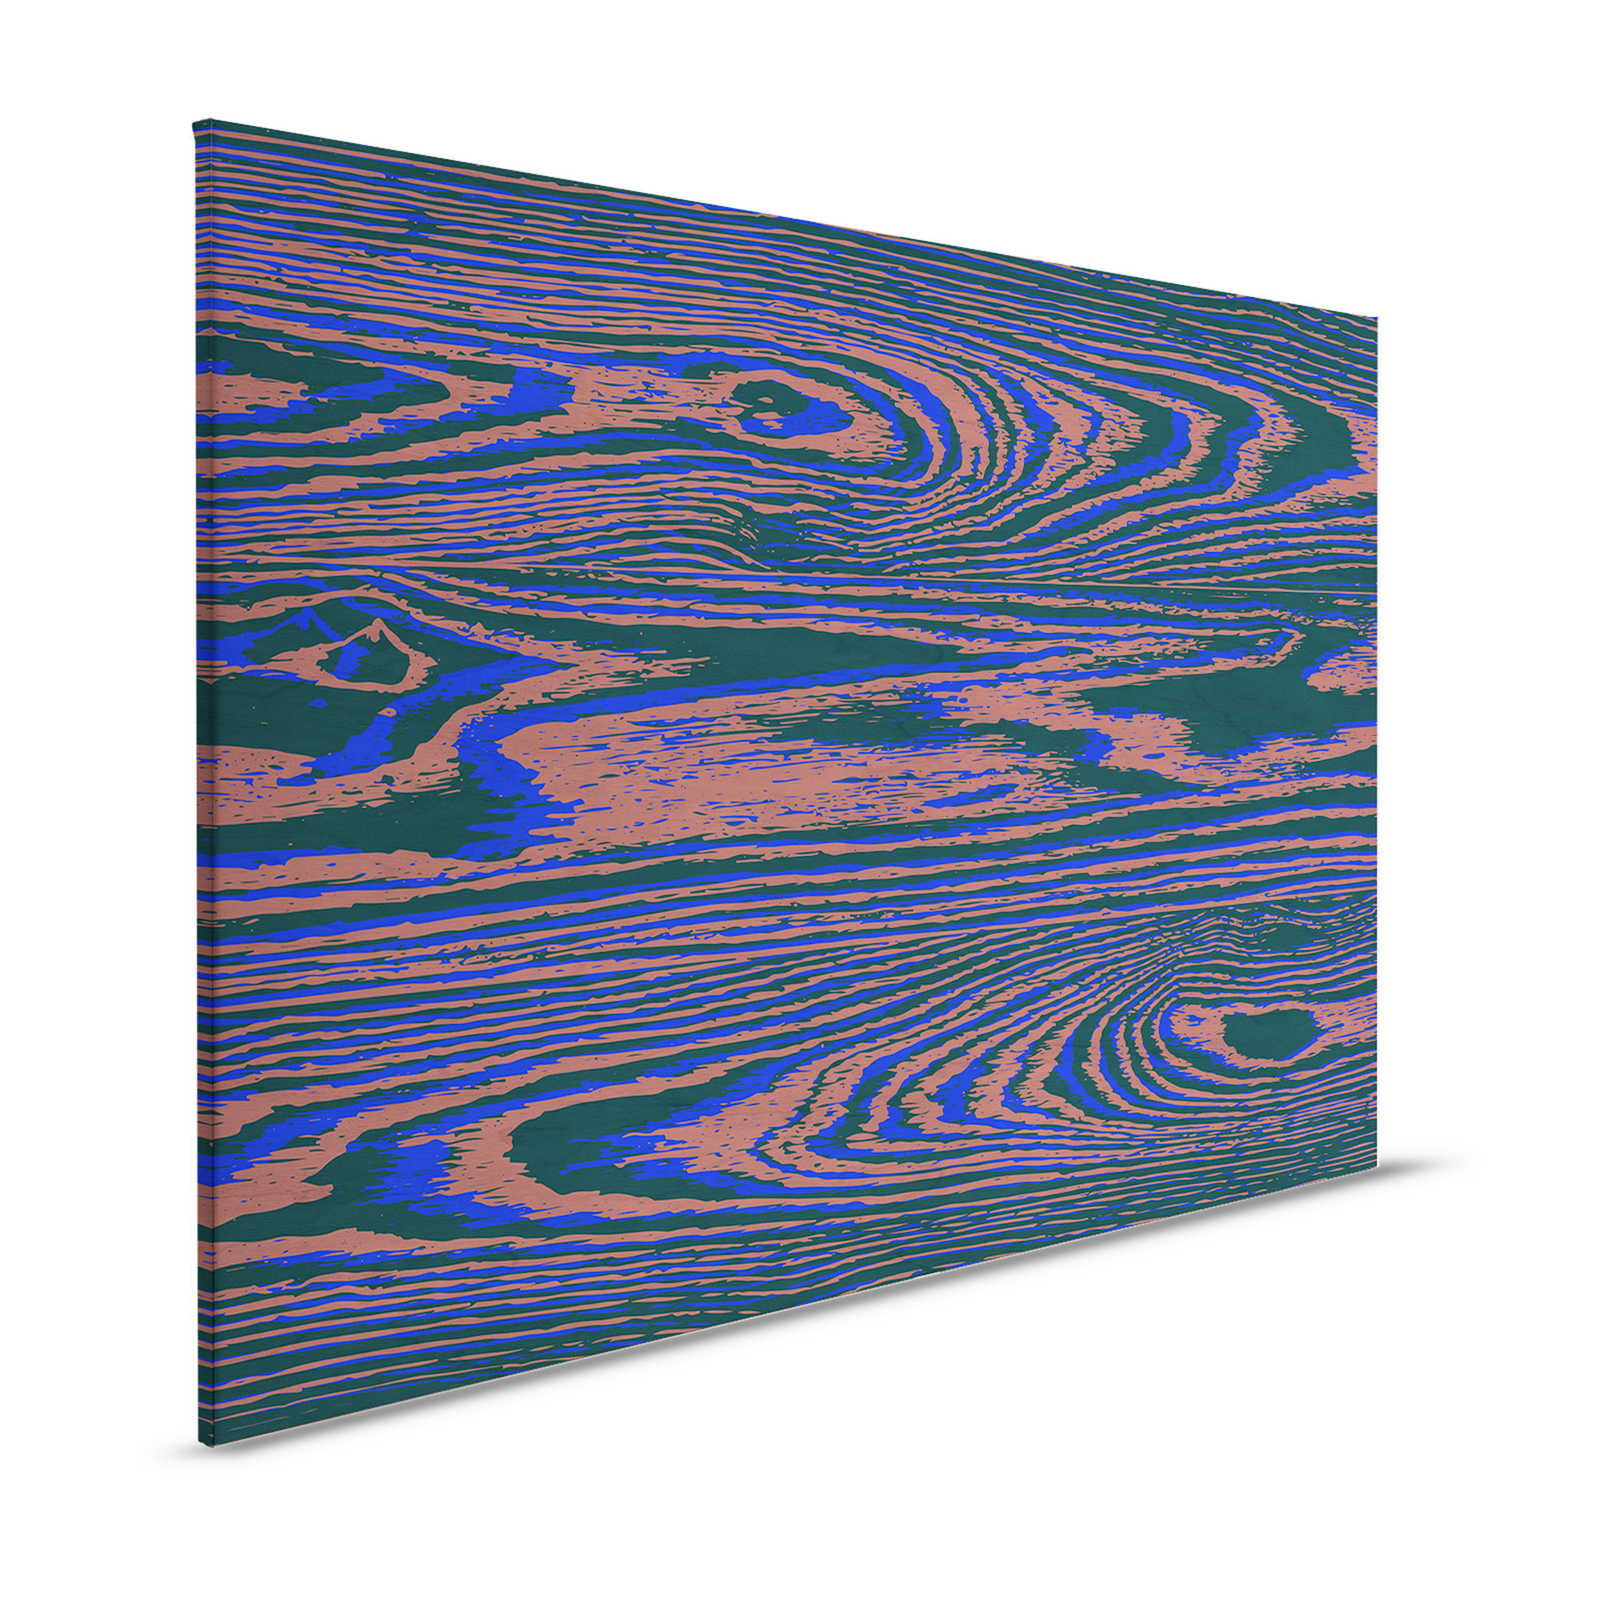 Kontiki 3 - Toile Veines de bois néon, violet & noir - 1,20 m x 0,80 m
